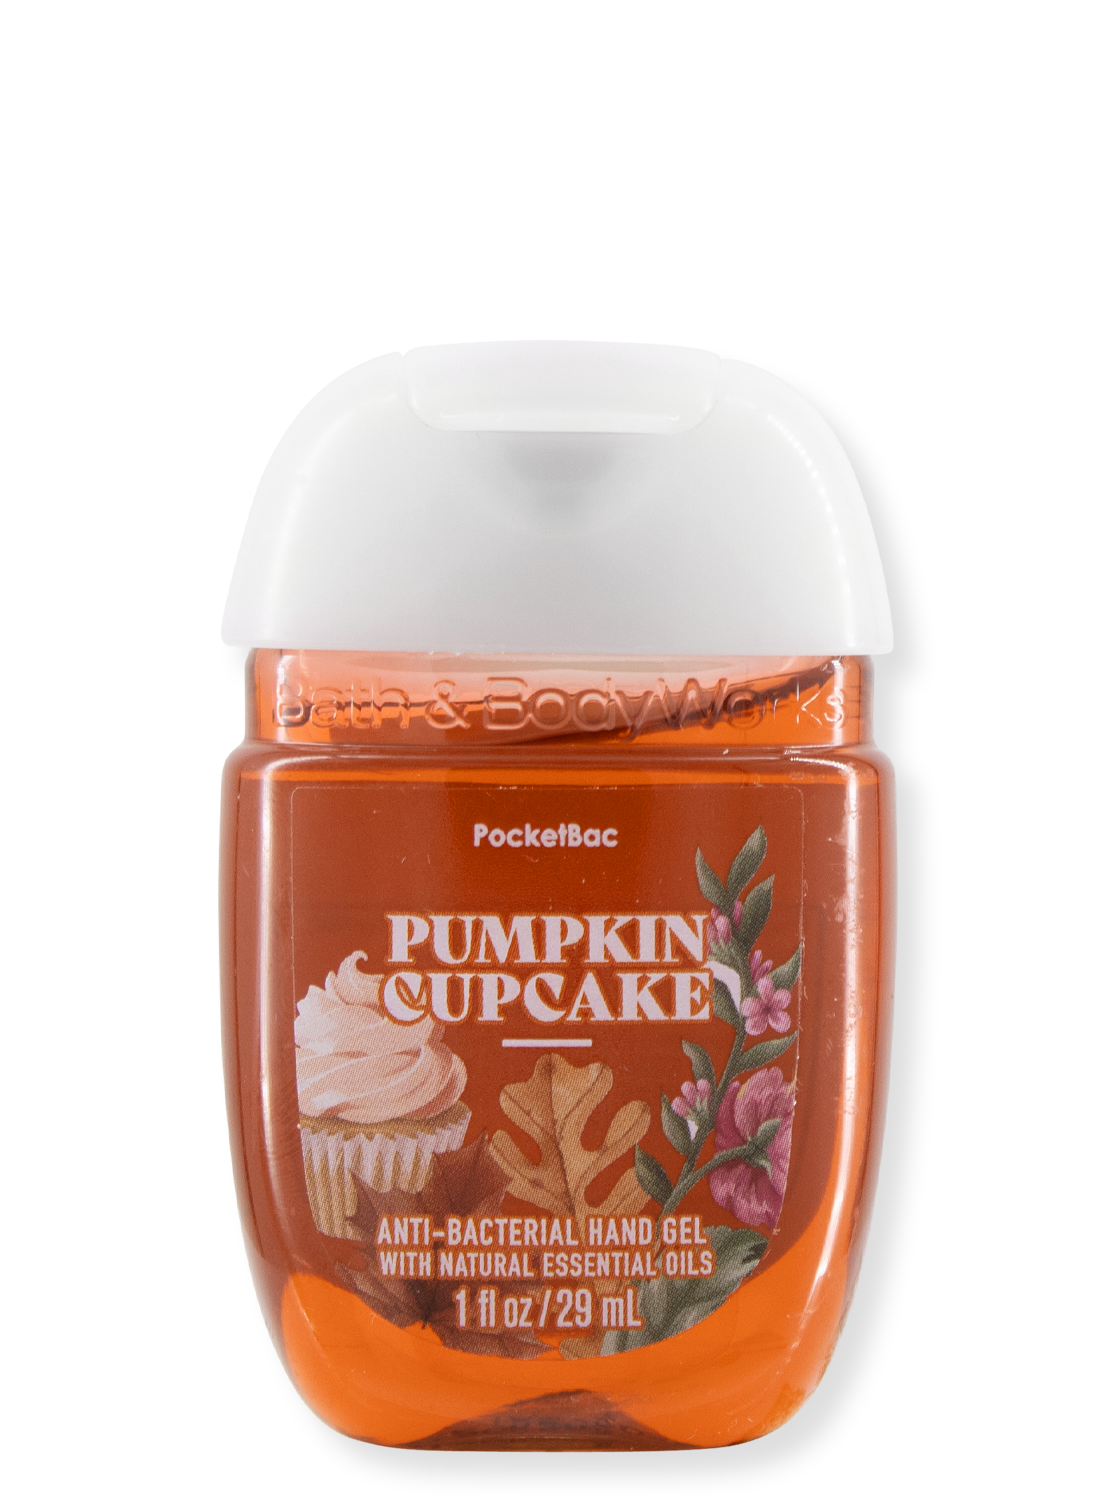 Hand-Desinfektionsgel - Pumpkin Cupcake - 29ml